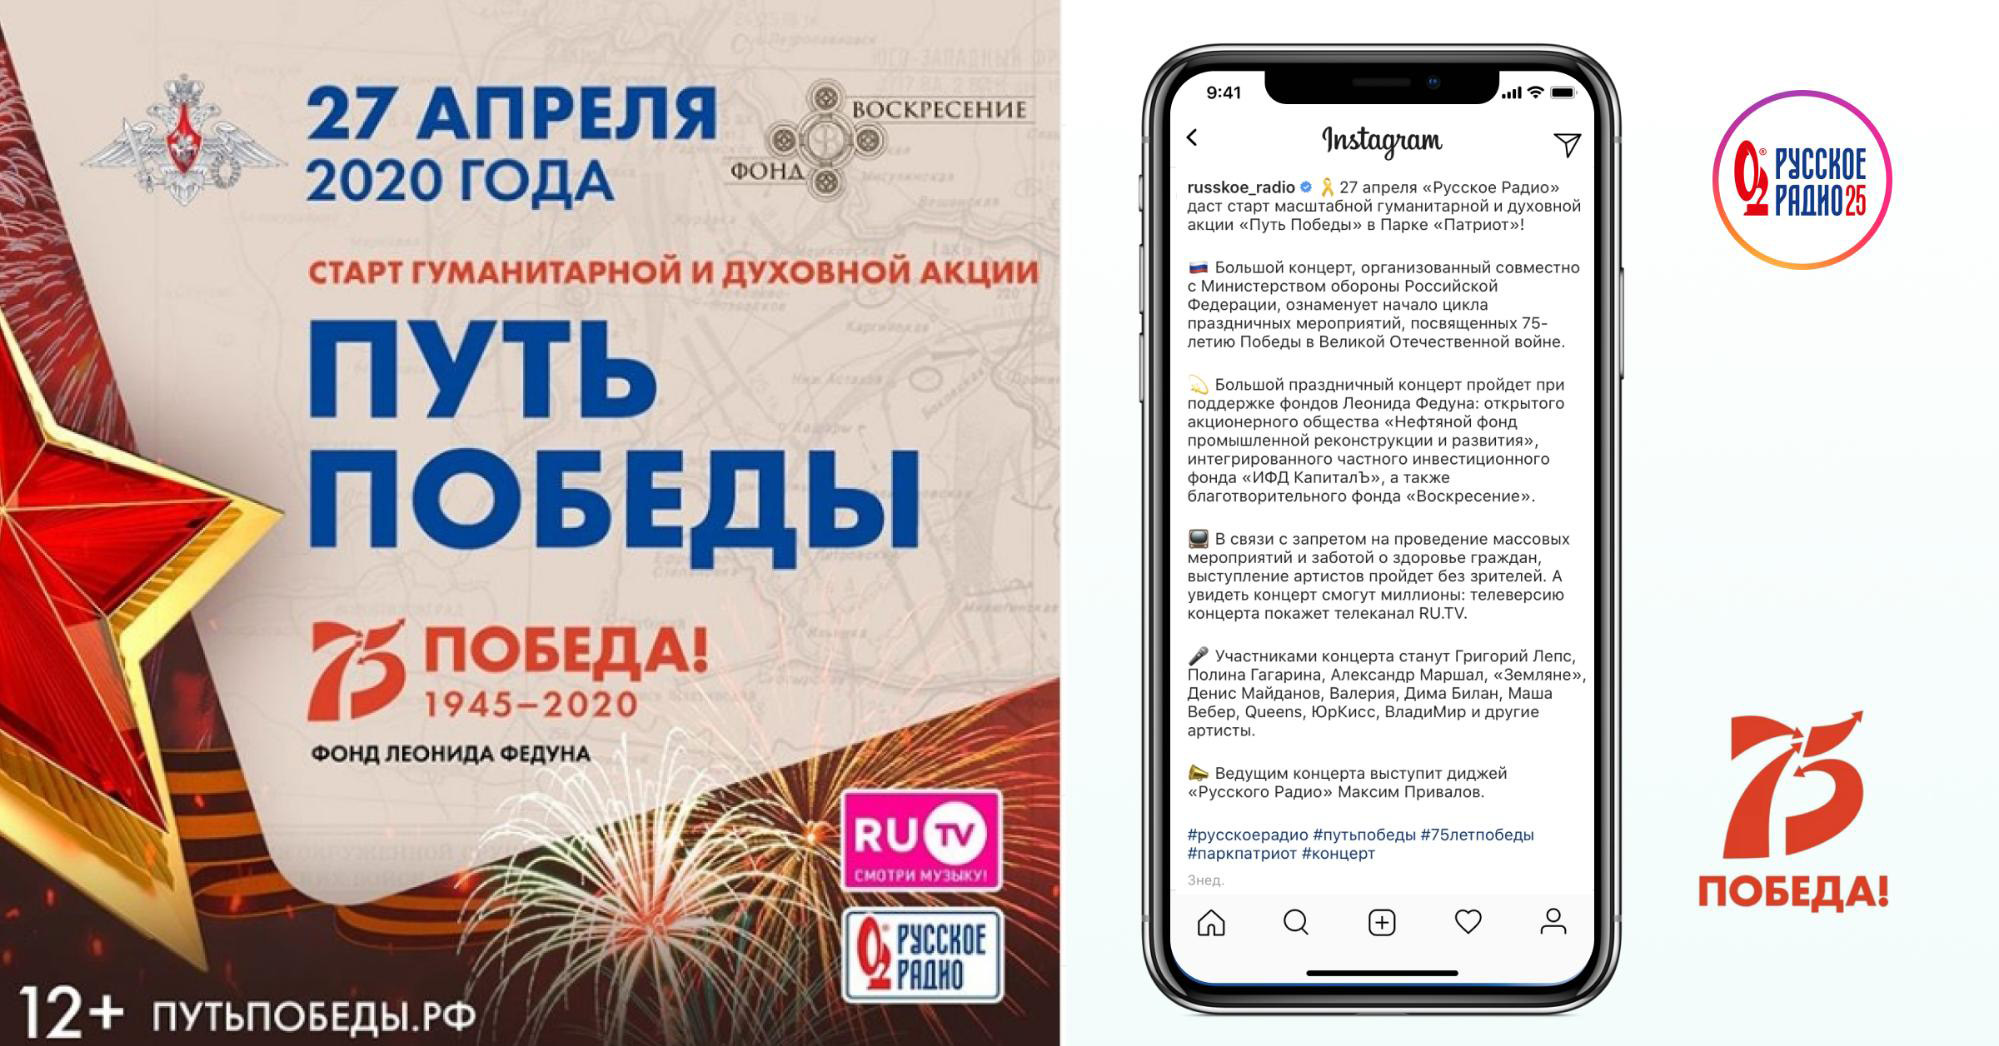 Как Instagram работает на медиа - Реклама мероприятий Русской Медиагруппы